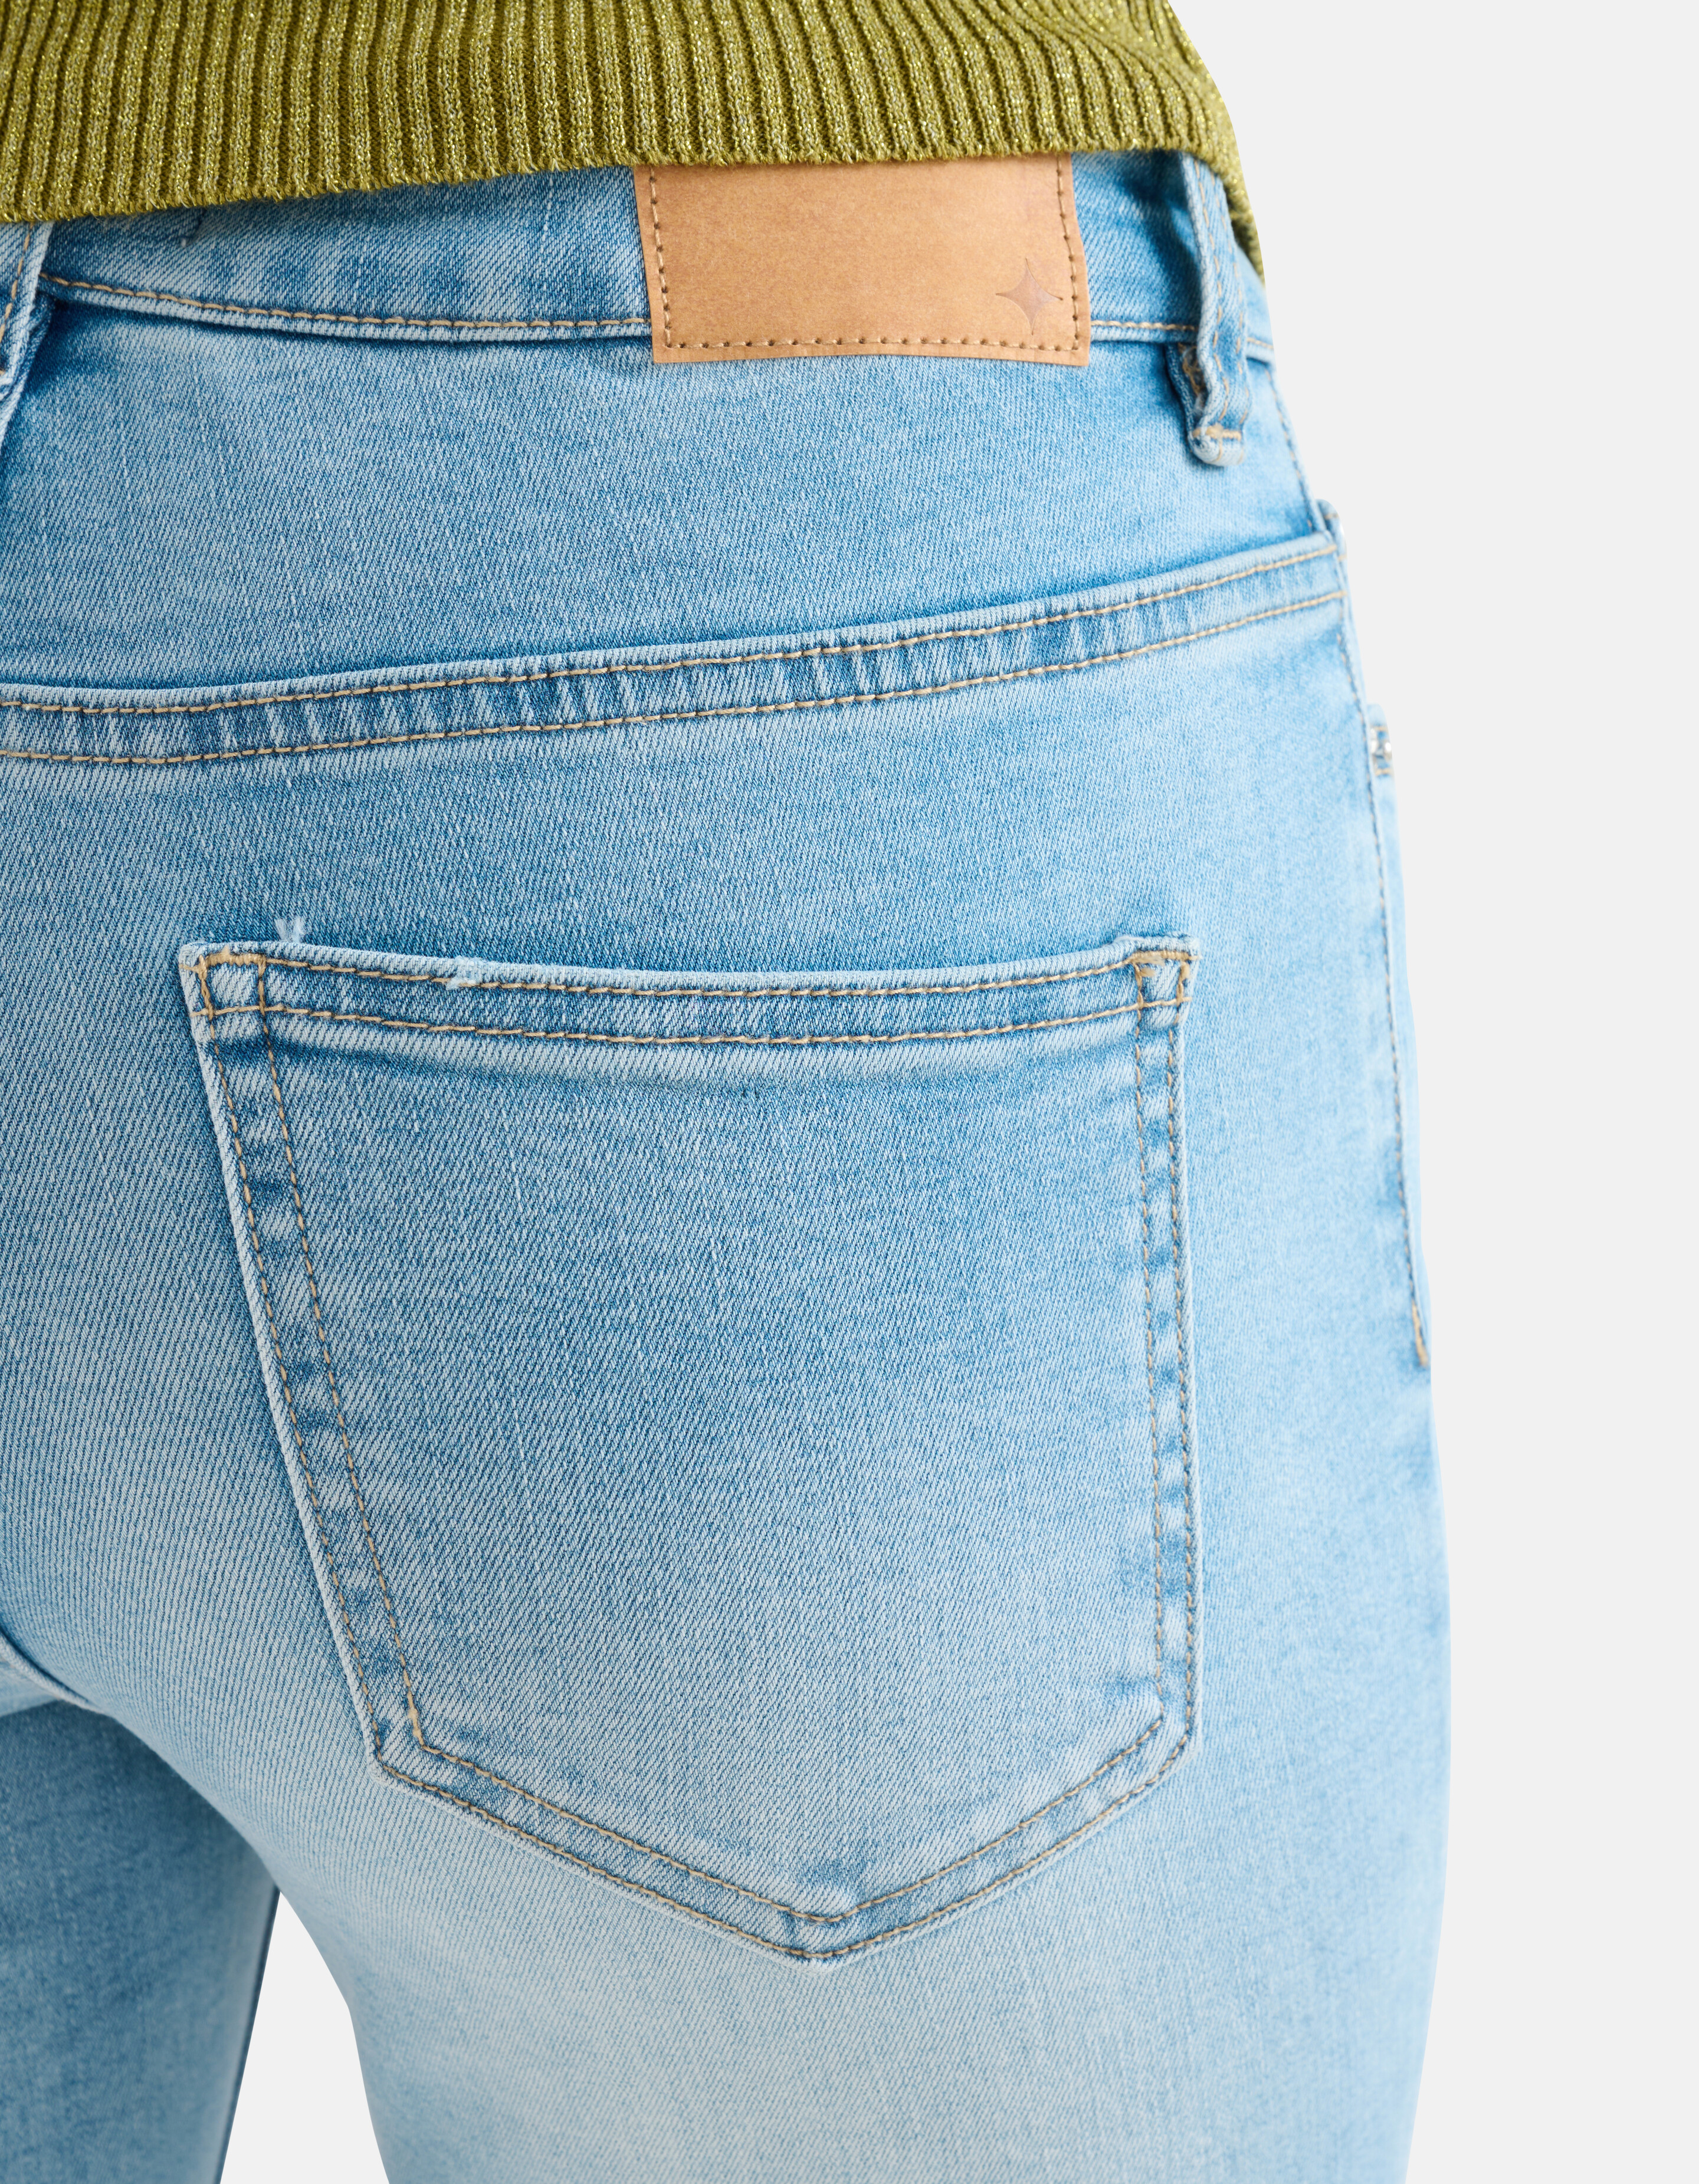 Skinny Jeans L28 gebleicht SHOEBY WOMEN